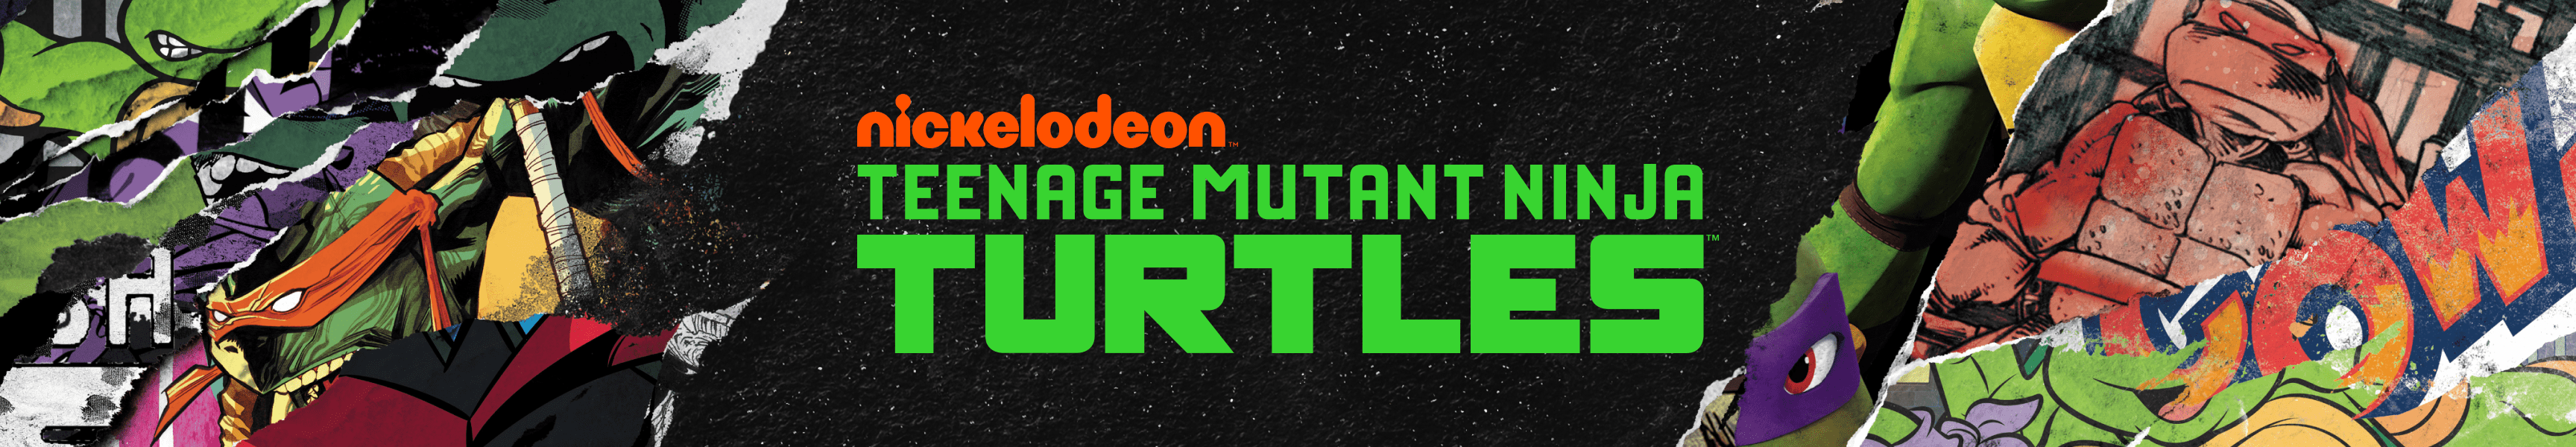 Teenage Mutant Ninja Turtles Couvertures